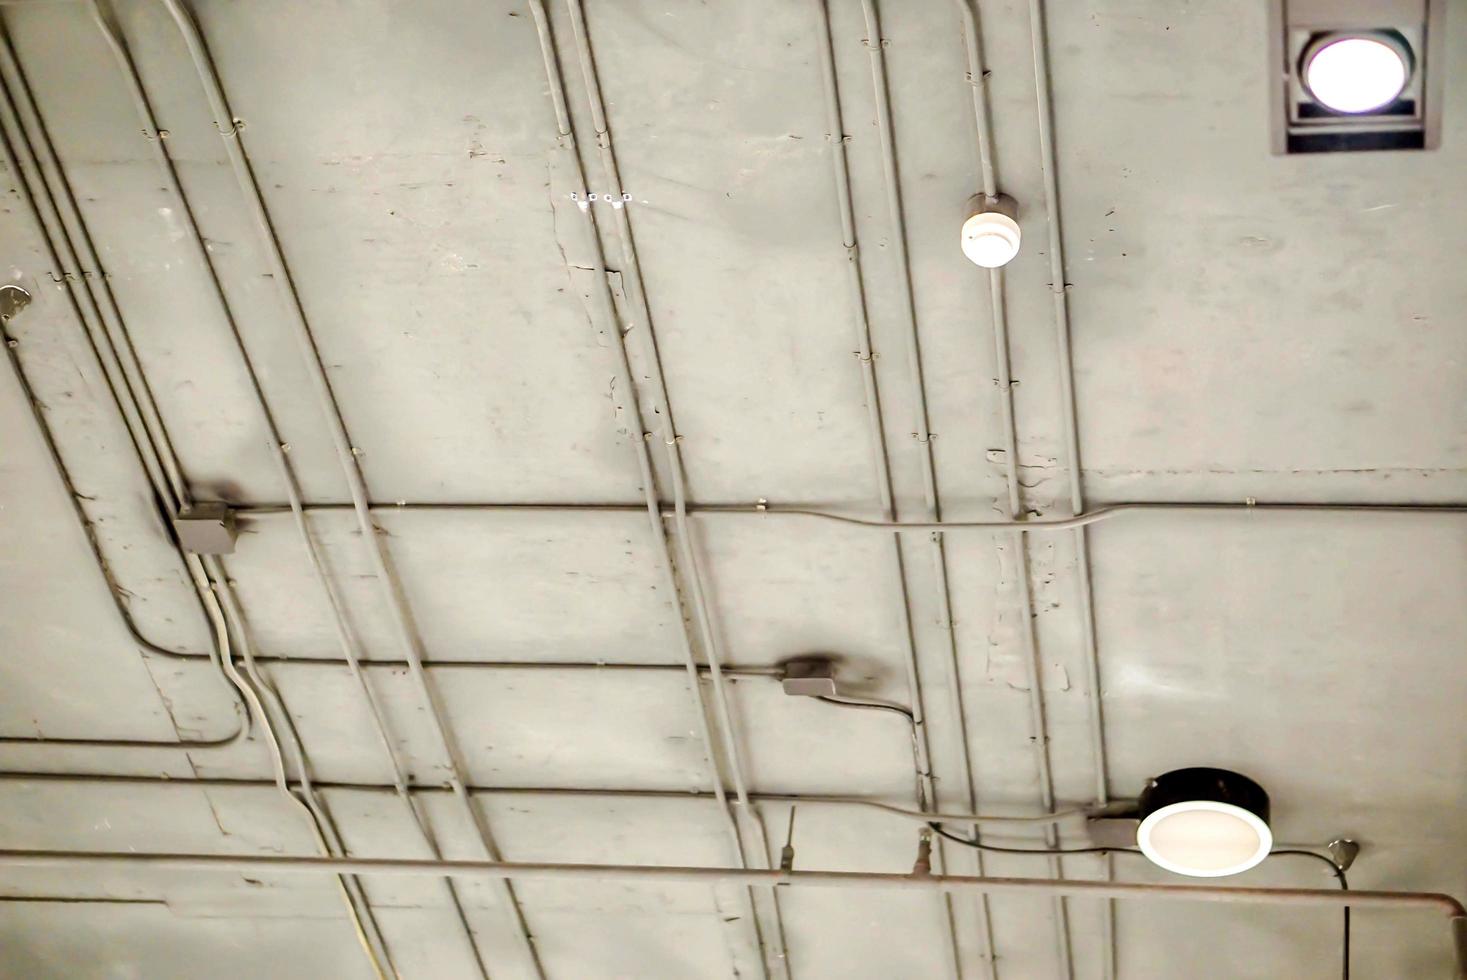 diseño y estructura de tubería de cable eléctrico en techo de edificios. foto